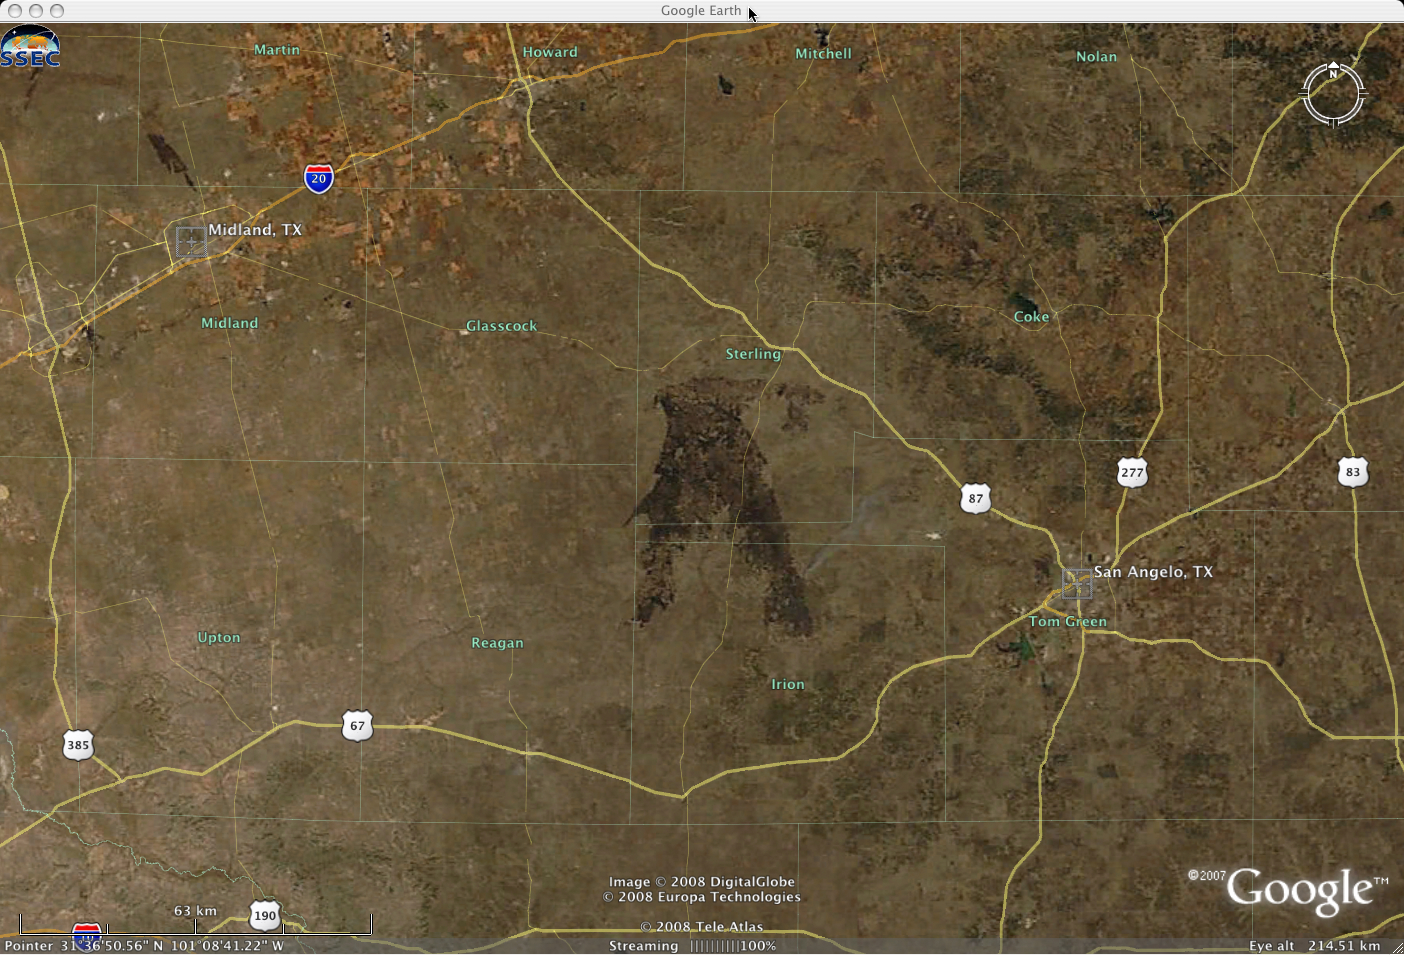 MODIS true color image (Google Earth)